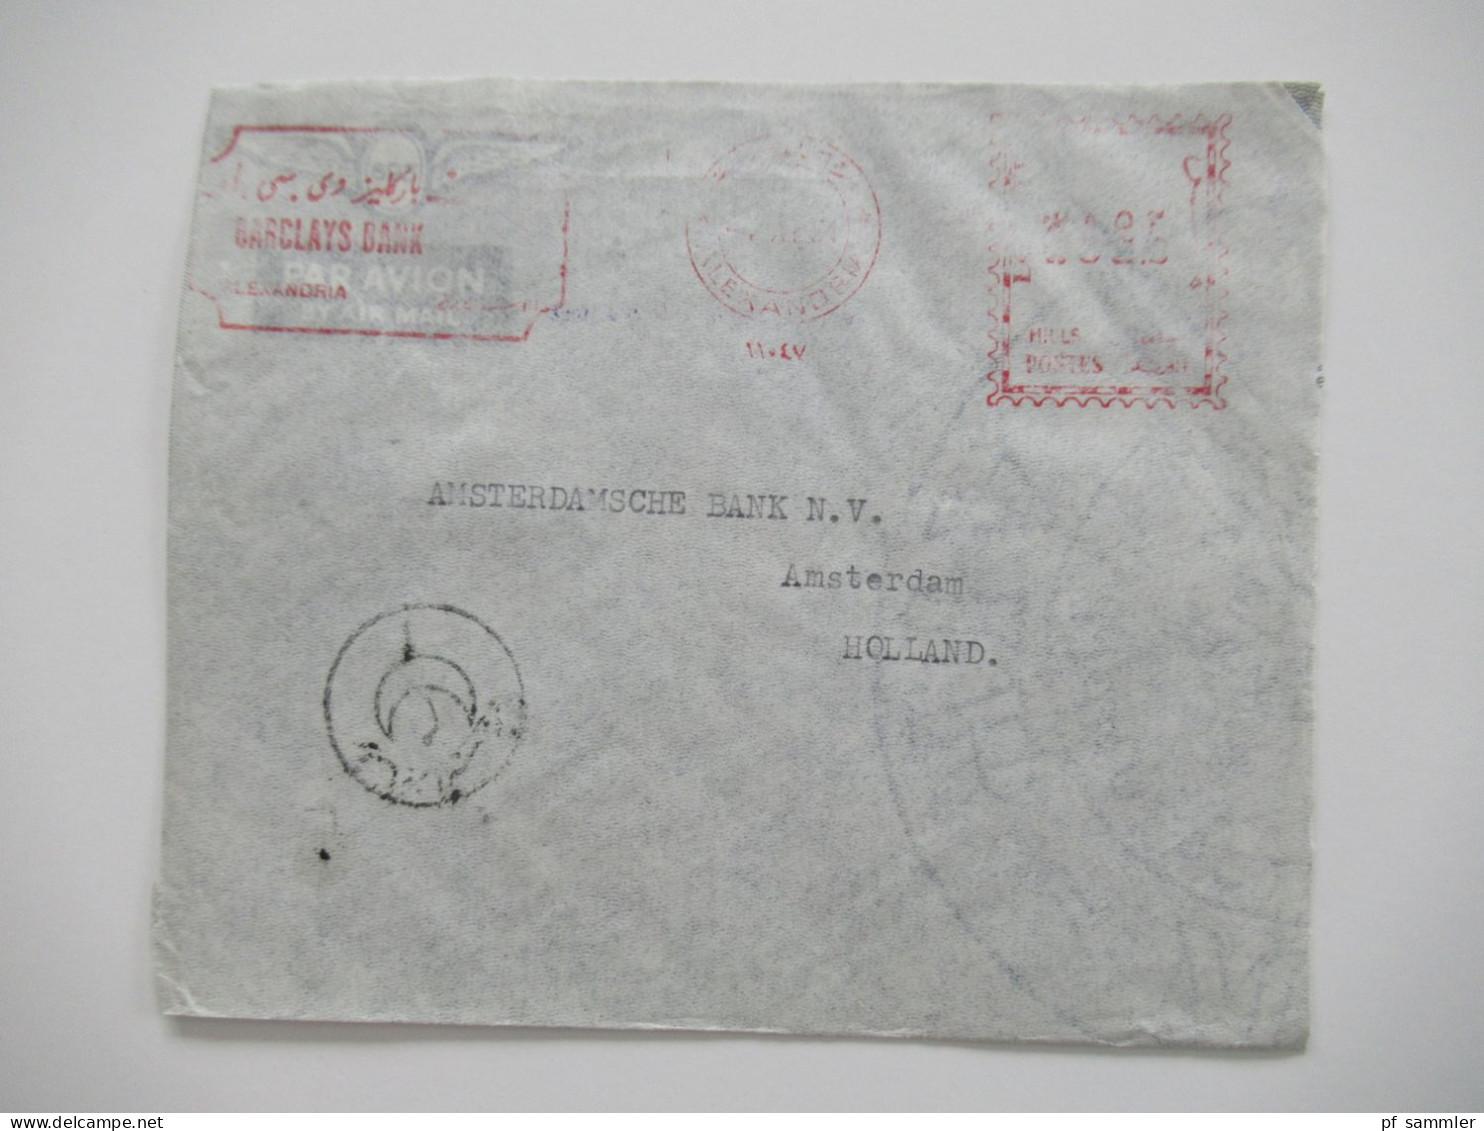 Ägypten 1950er Jahre Belegeposten 41 Belege / teils Einschreiben / Reko / viele Stempel / AFS Freistempel nach Holland